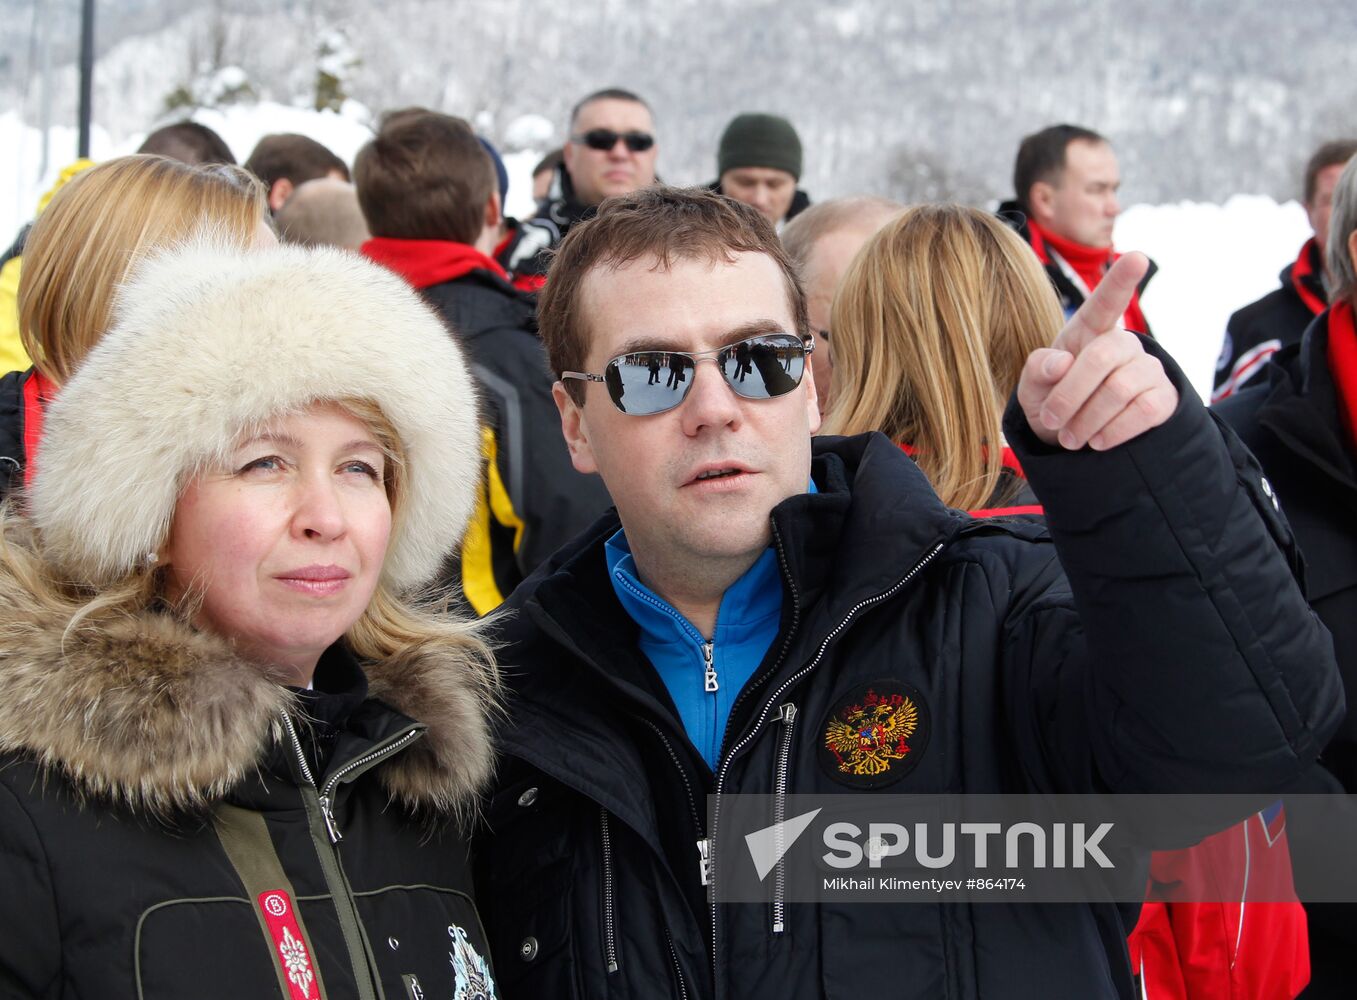 Dmitry Medvedev and Vladimir Putin visit Roza Khutor ski resort